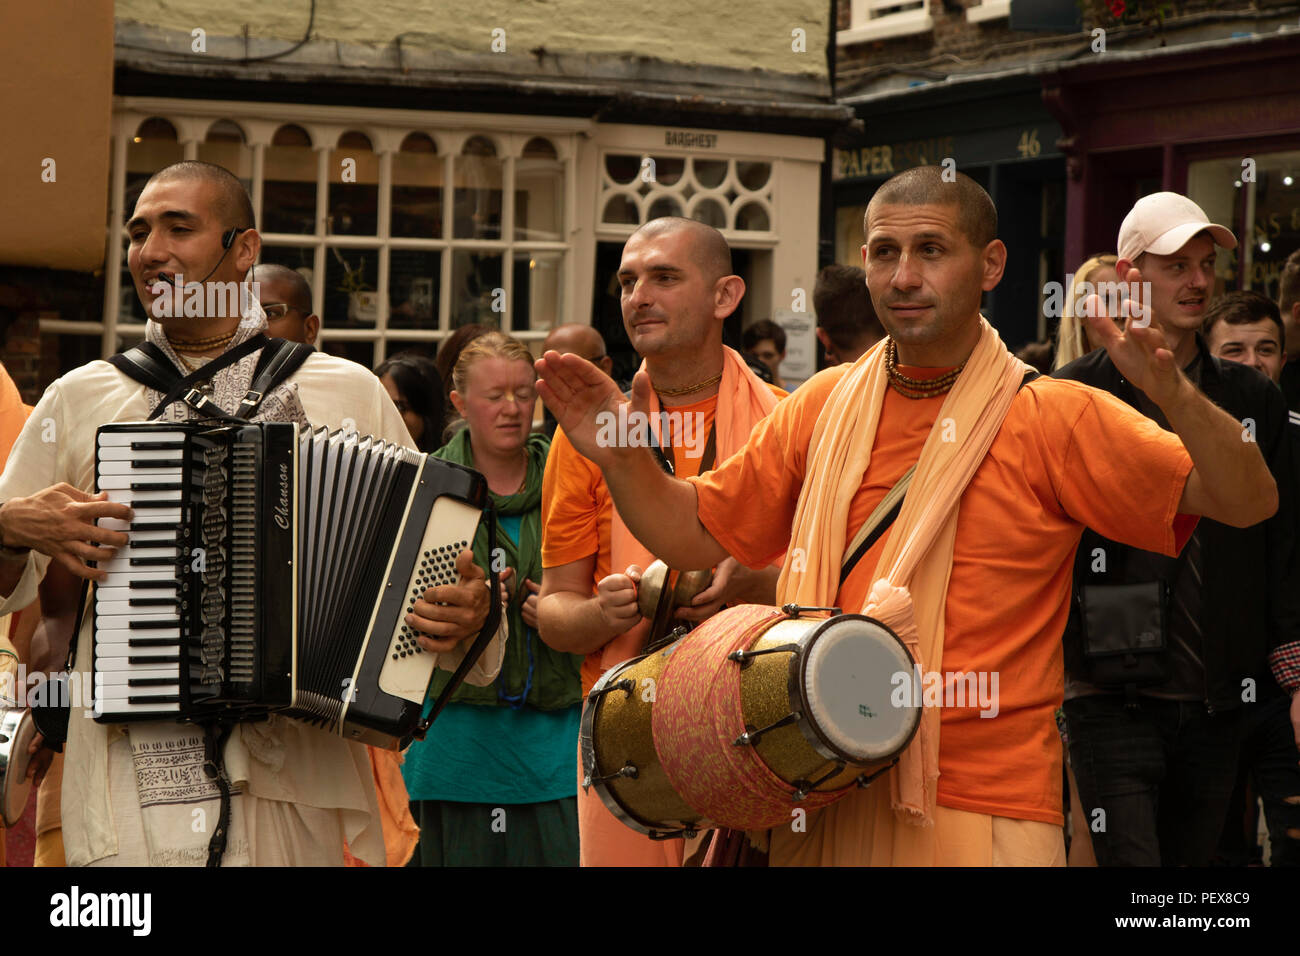 Les membres de Hare Krishna jouent à l'accordéon et au tambour tout en chantant dans les rues de York, North Yorkshire, Angleterre, Royaume-Uni. Banque D'Images